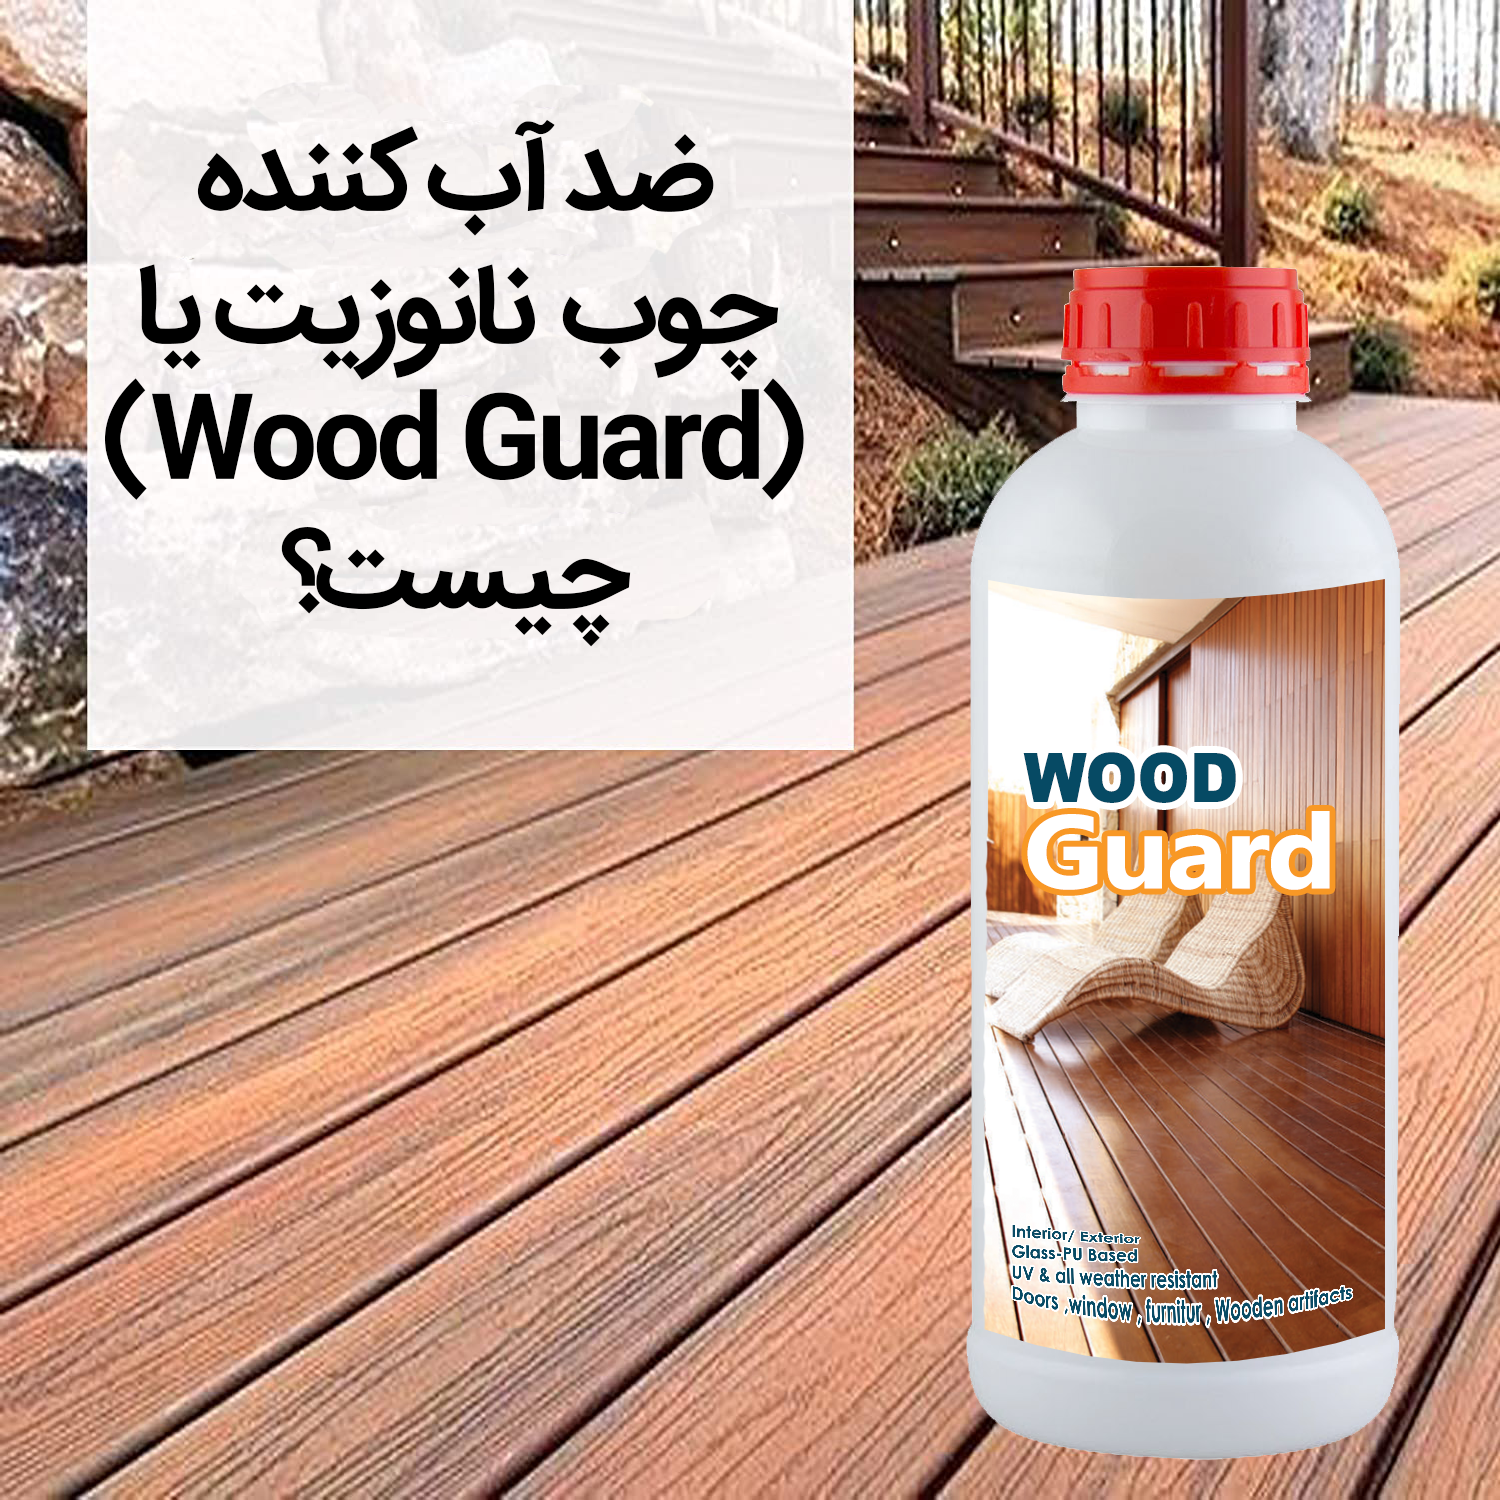 ضد آب کننده چوب نانوزیت یا wood guard